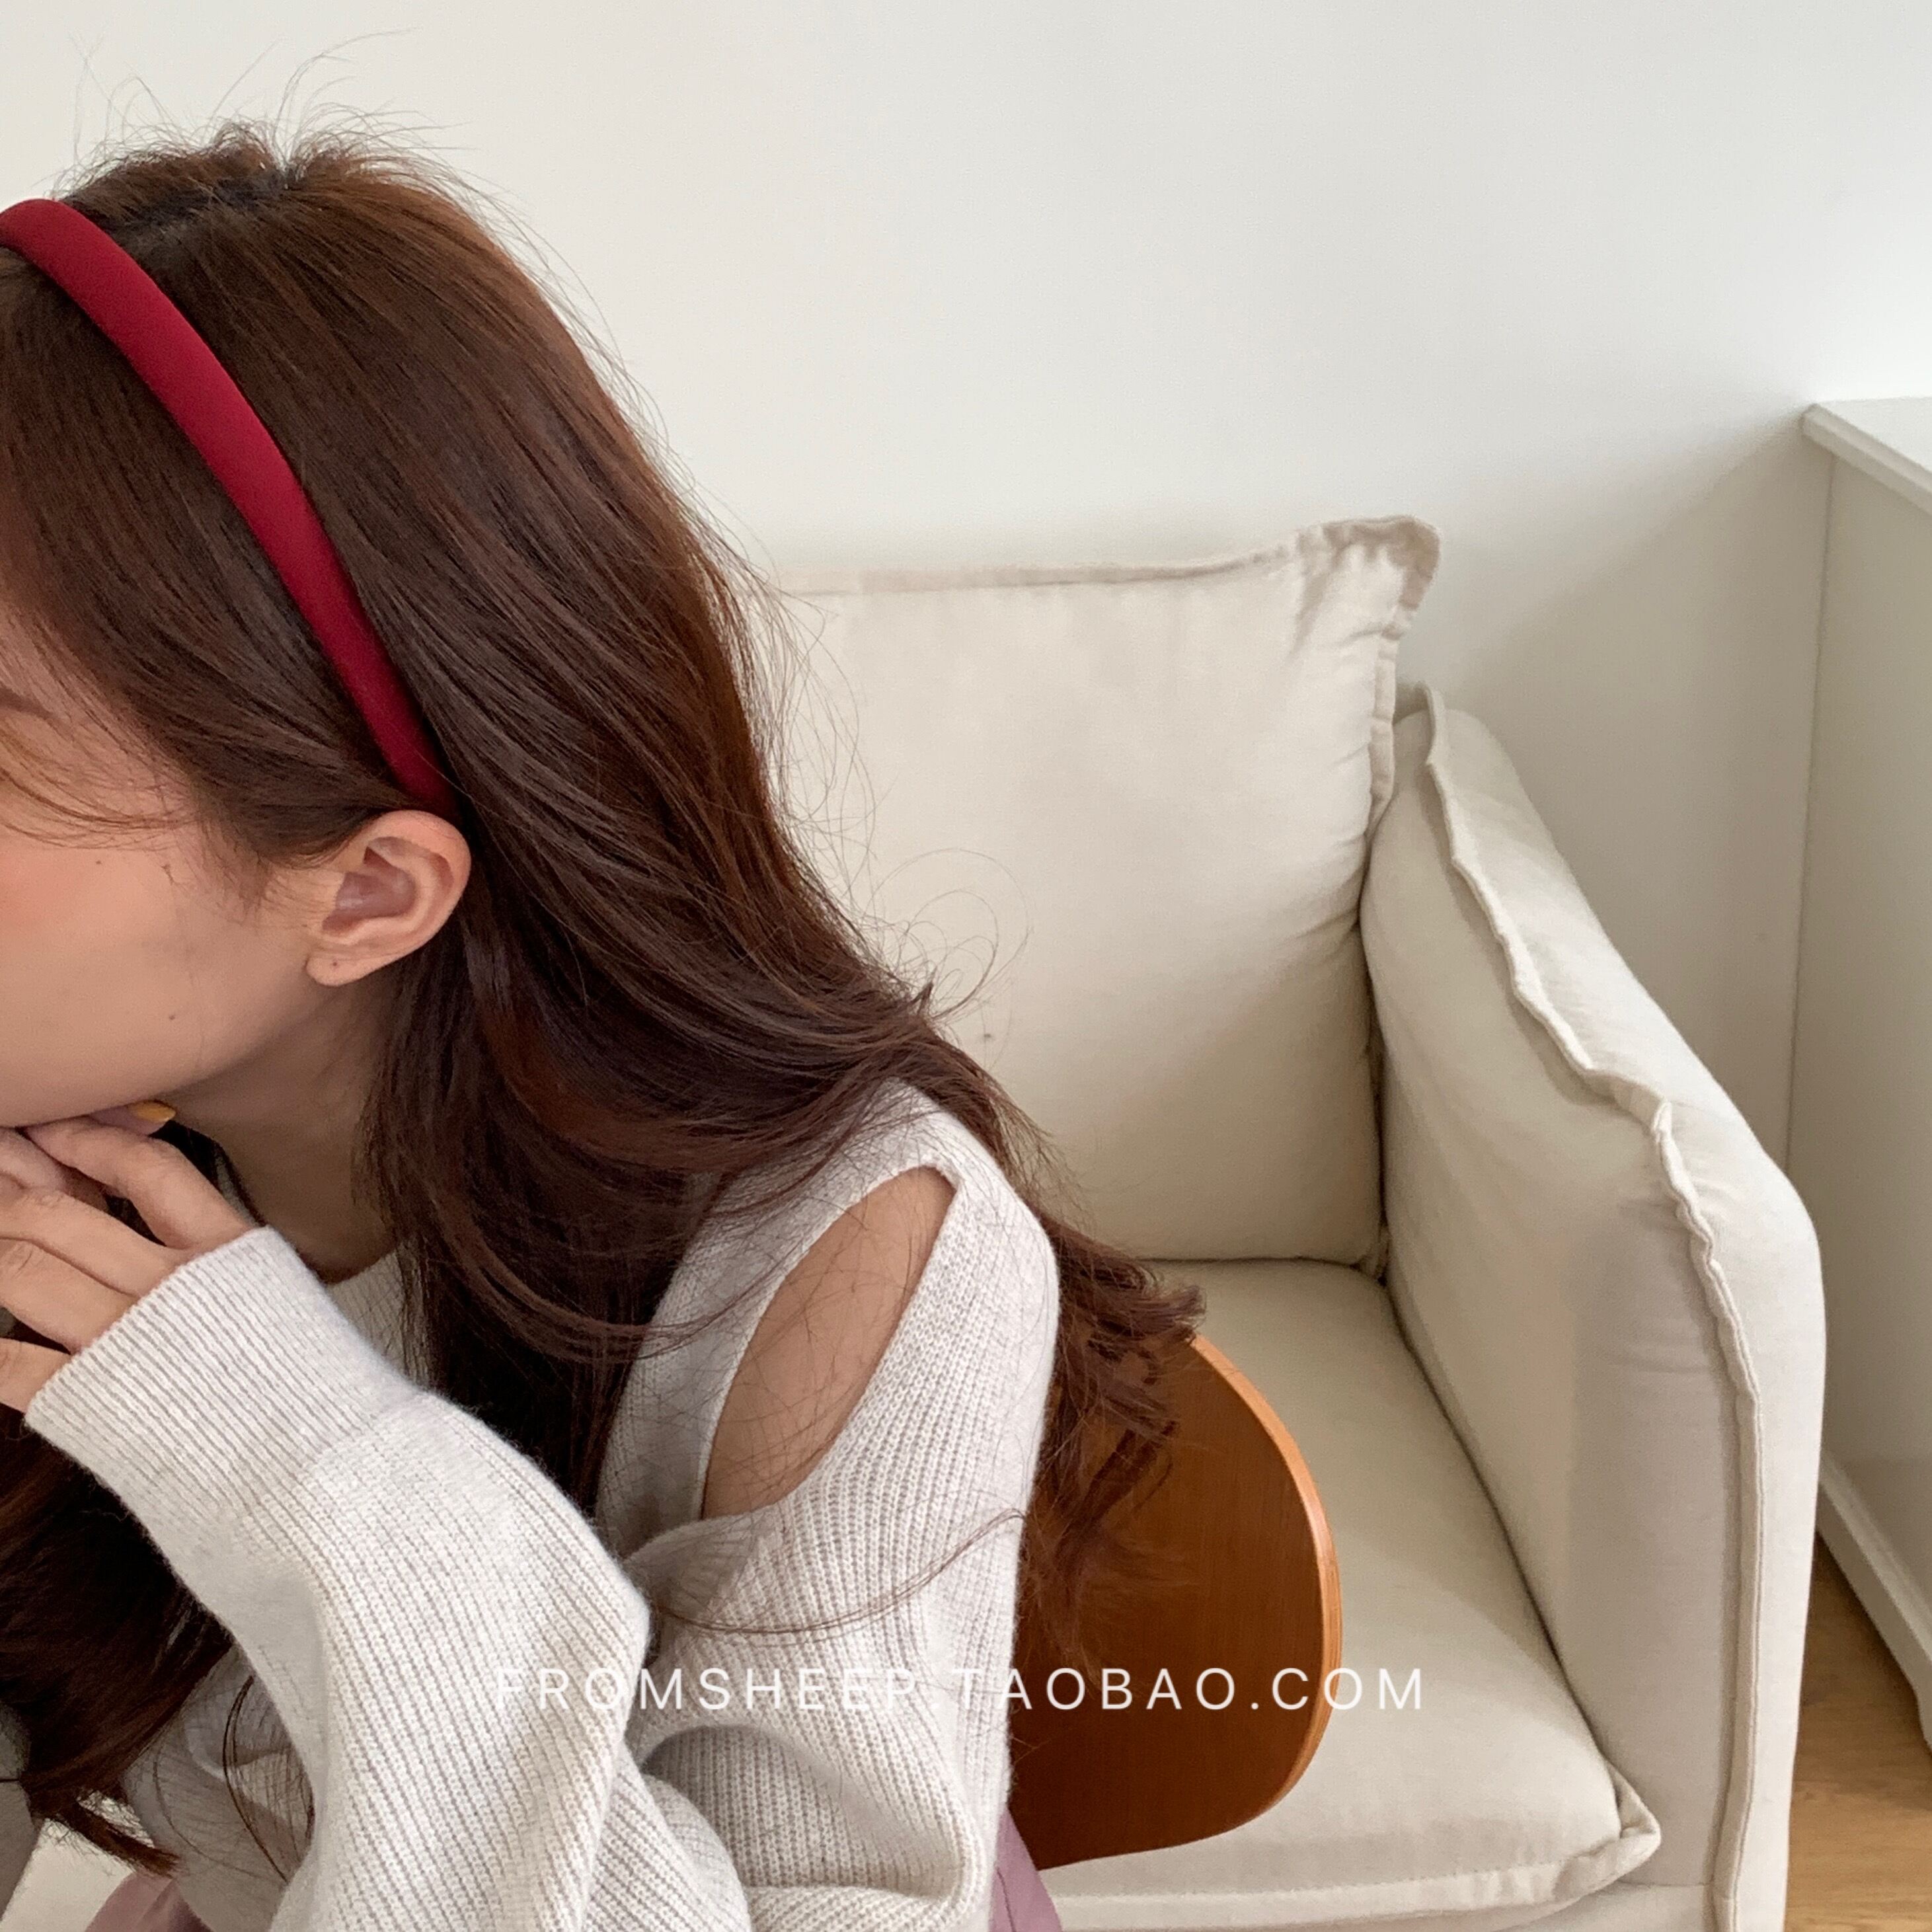 Bờm Tóc Mảnh Màu Đỏ Bờm Tóc Rửa Mặt Ép Tóc Cổ Điển Cho Nữ Phụ Kiện Tóc Bó Tóc Trang Sức Tóc Bờm Tóc Cảm Giác Cao Cấp Nổi Tiếng Trên Mạng Hàn Quốc Sành Điệu